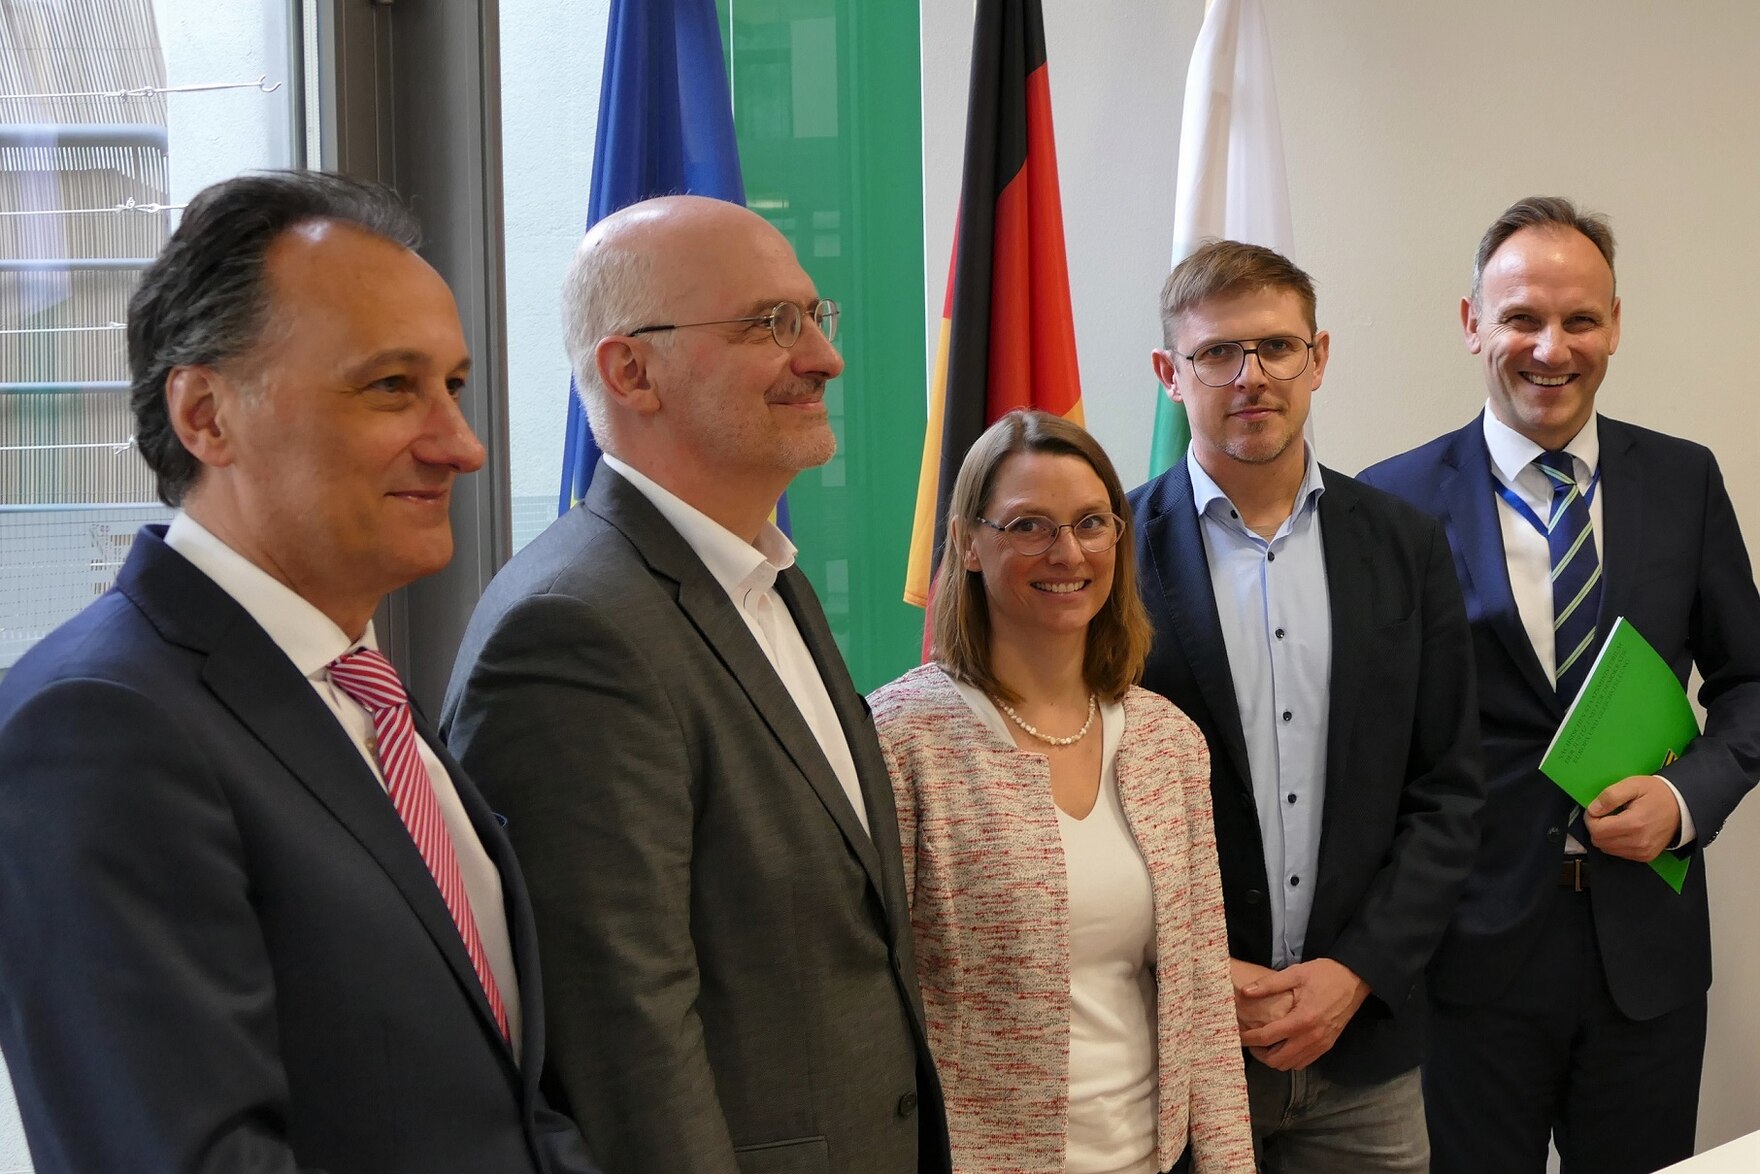 Von links nach rechts Christoph Wengler, Dr. Dominik Meister, Anna-Lena Zademach-Schwierz, MdEP Matthias Ecke und Jiří Zapletal